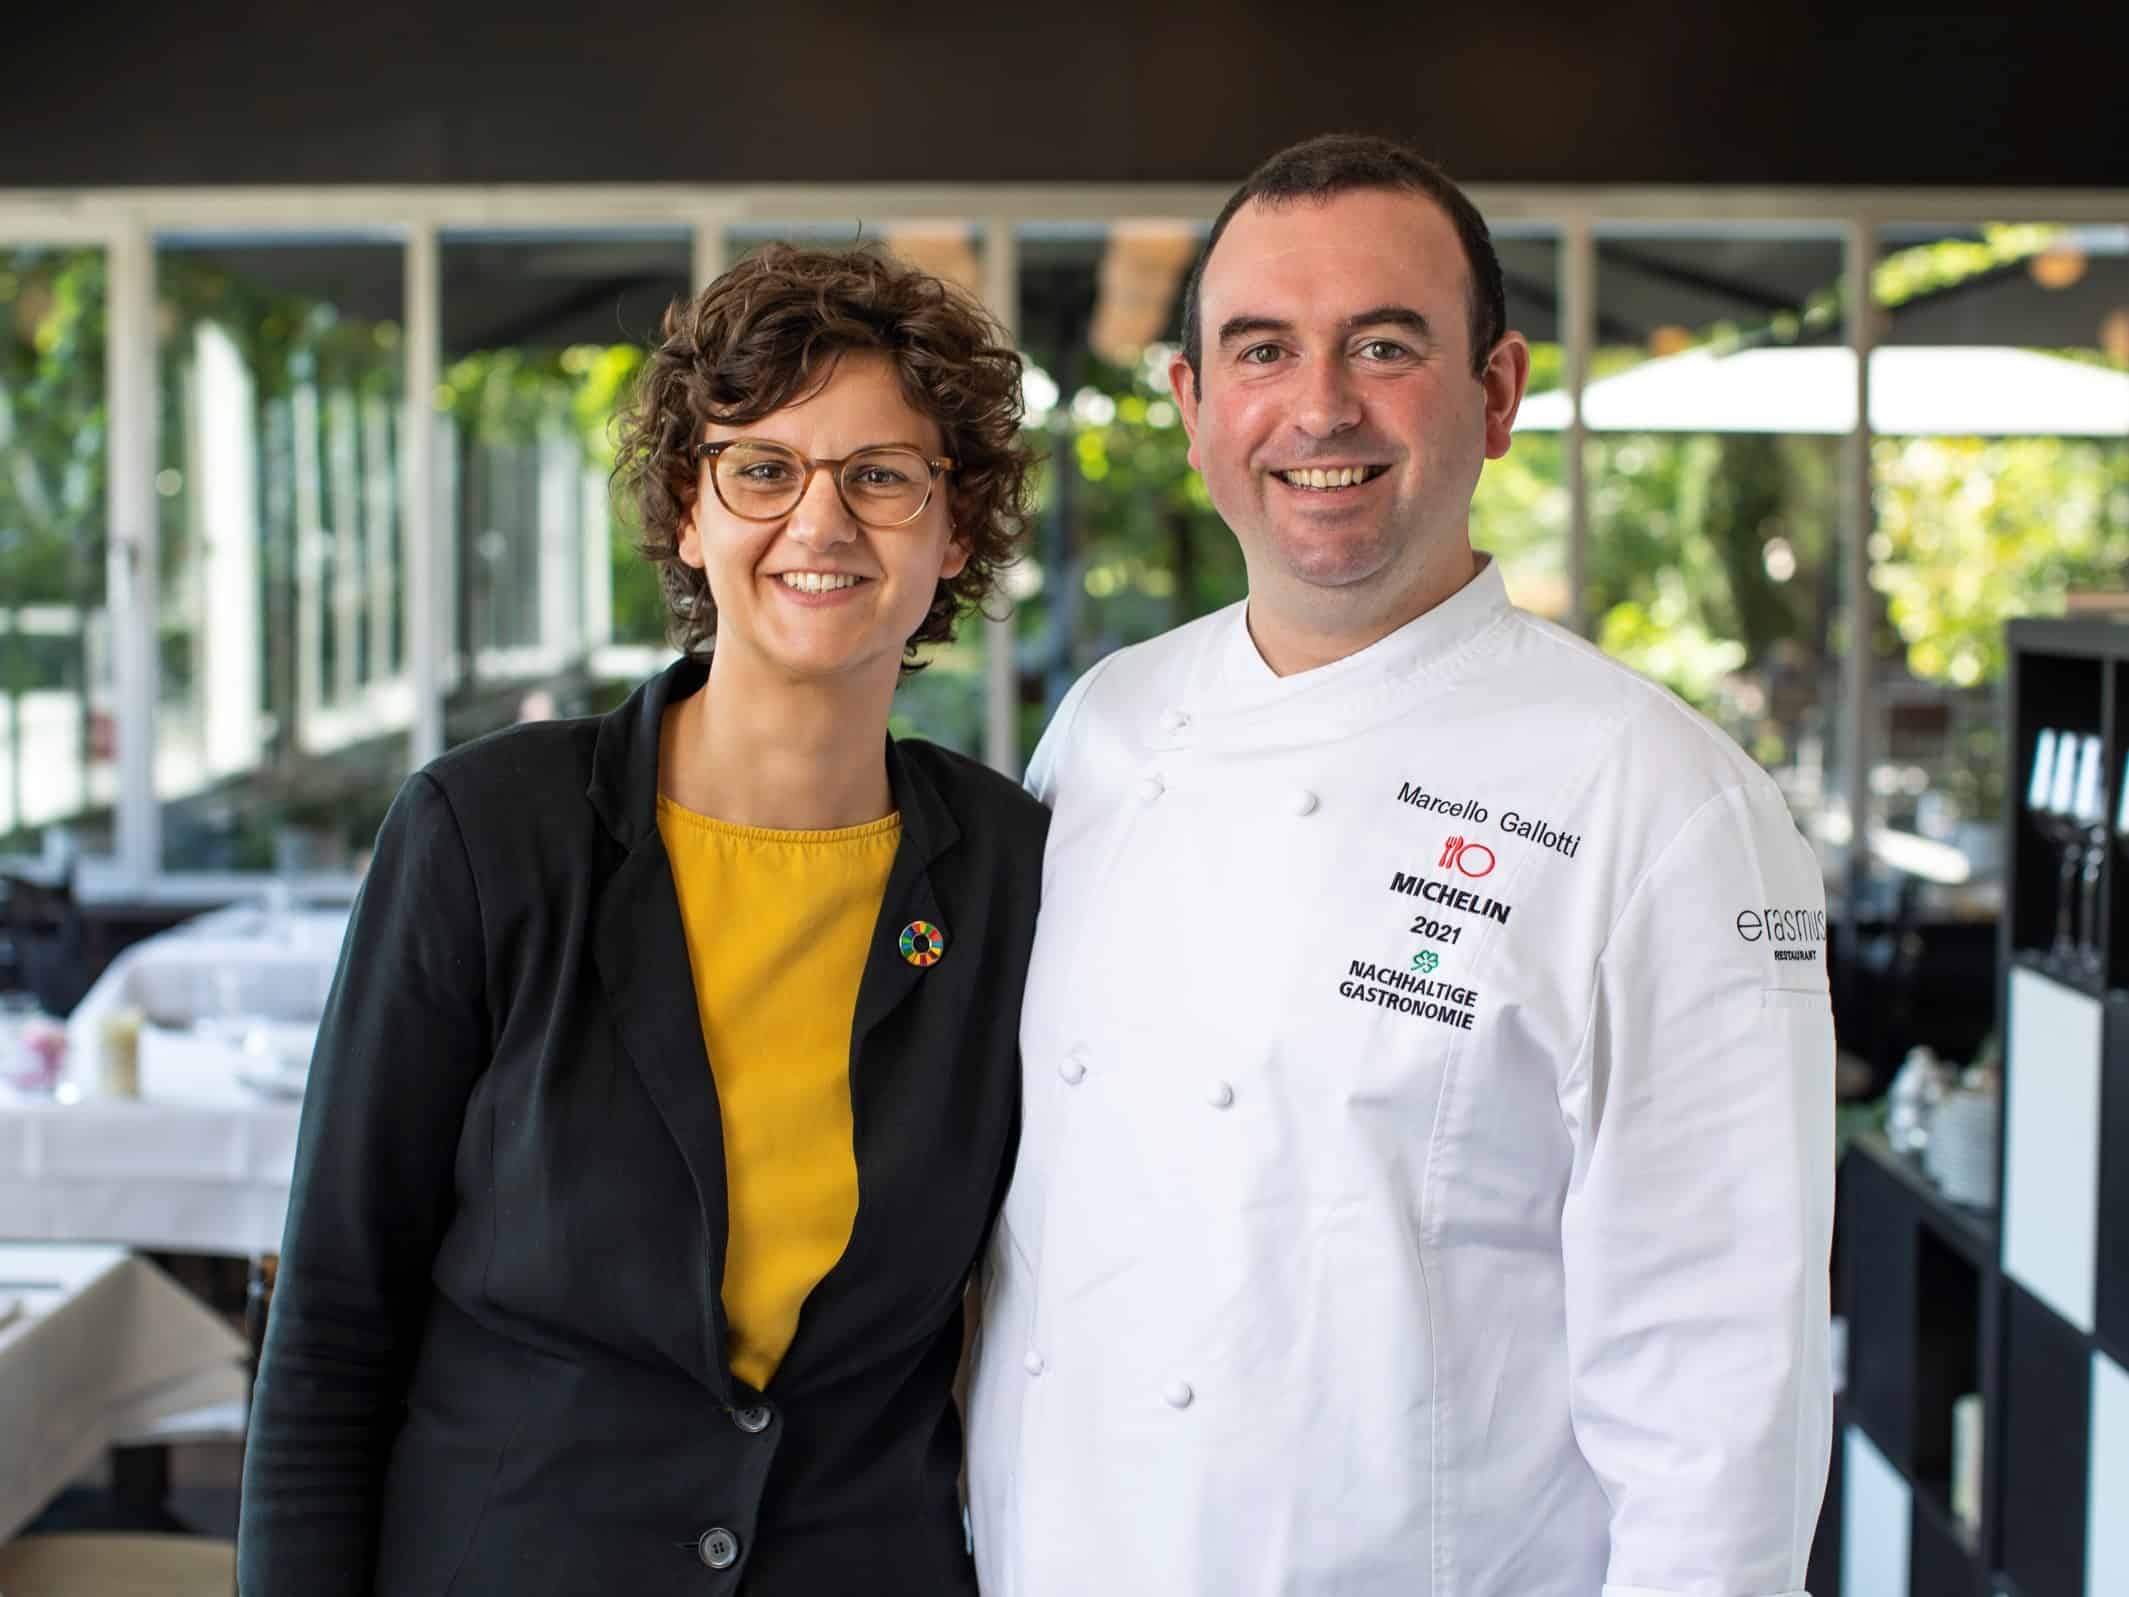 Andrea und Marcello Gallotti gewinnen den ersten Platz beim METRO Preis für nachhaltige Gastronomie 2021